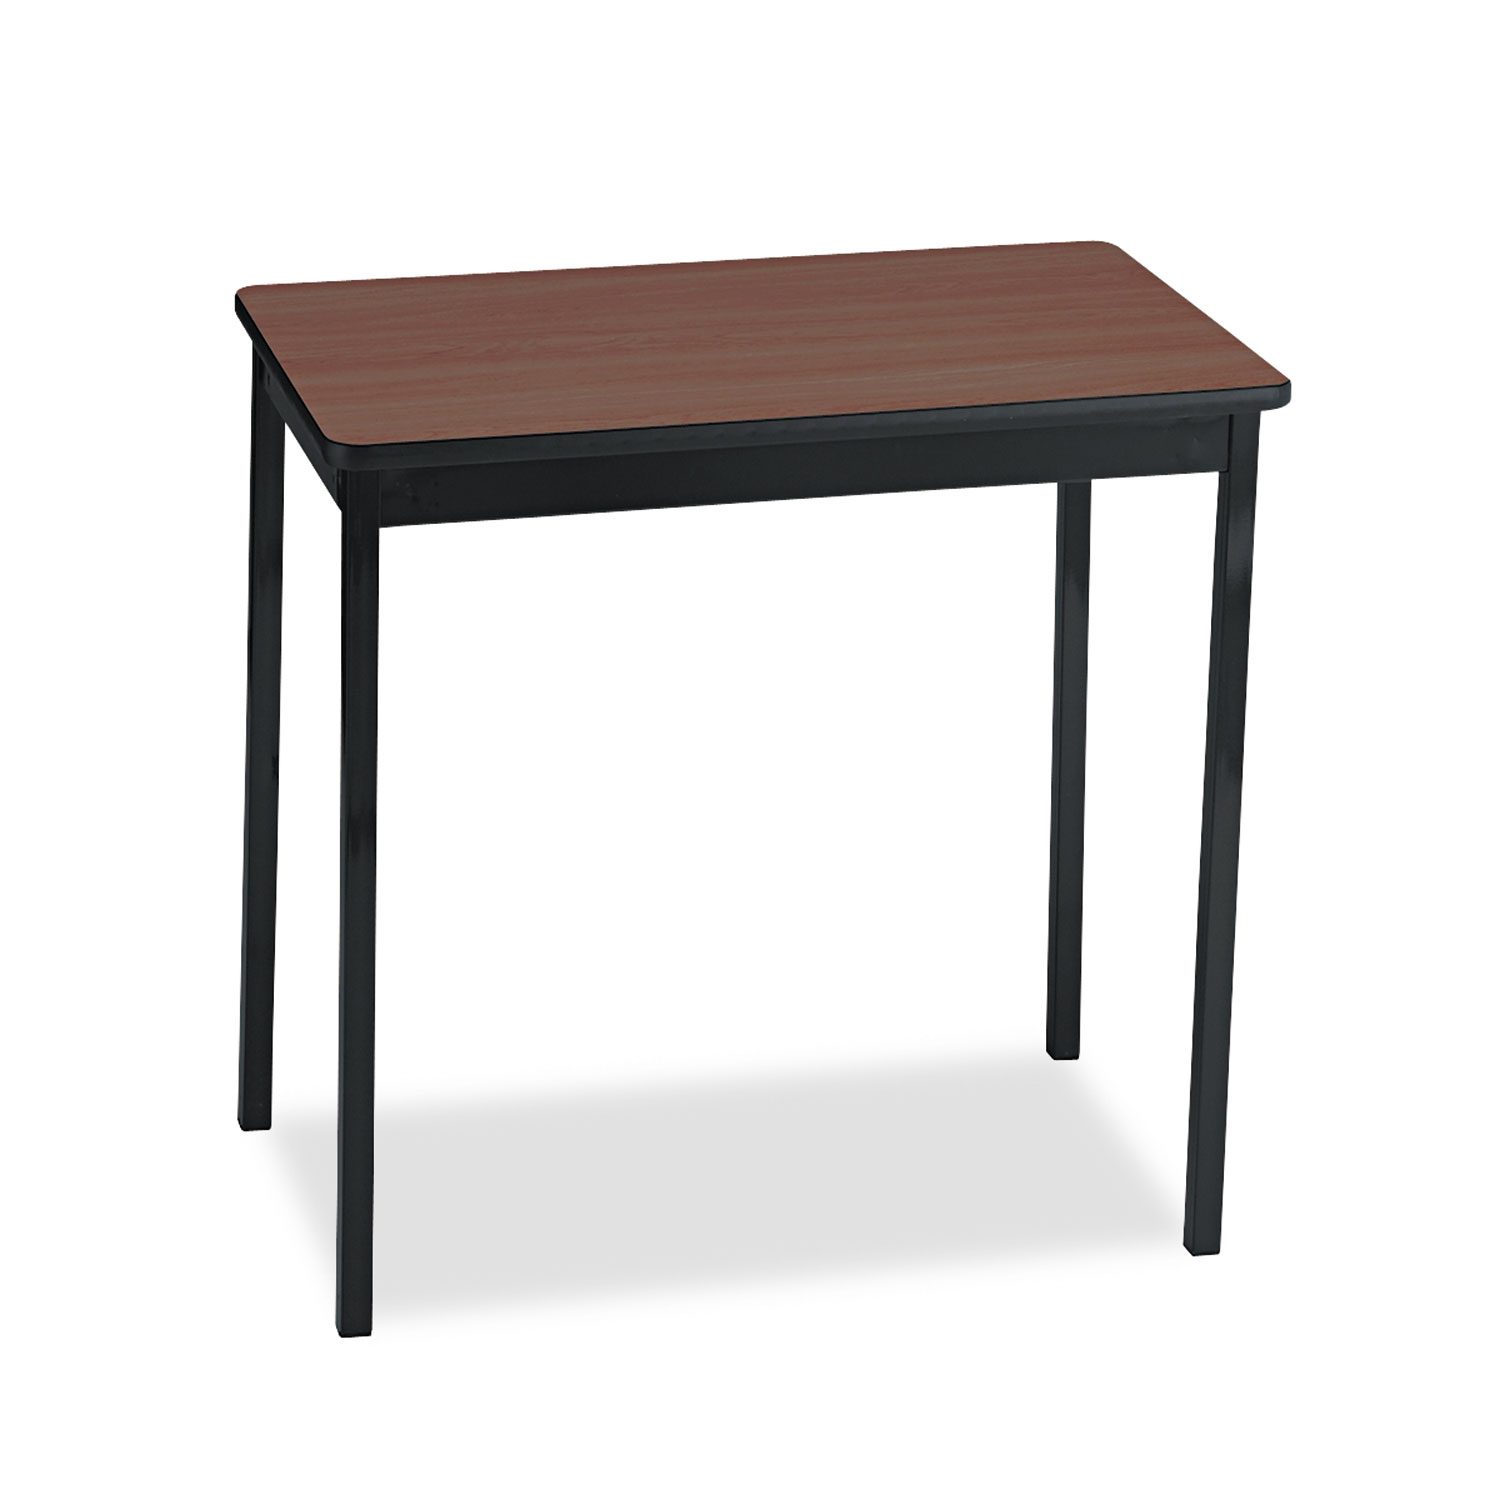  Barricks UT183030-WA Utility Table, Rectangular, 30w x 18d x 30h, Walnut/Black (BRKUT183030WA) 